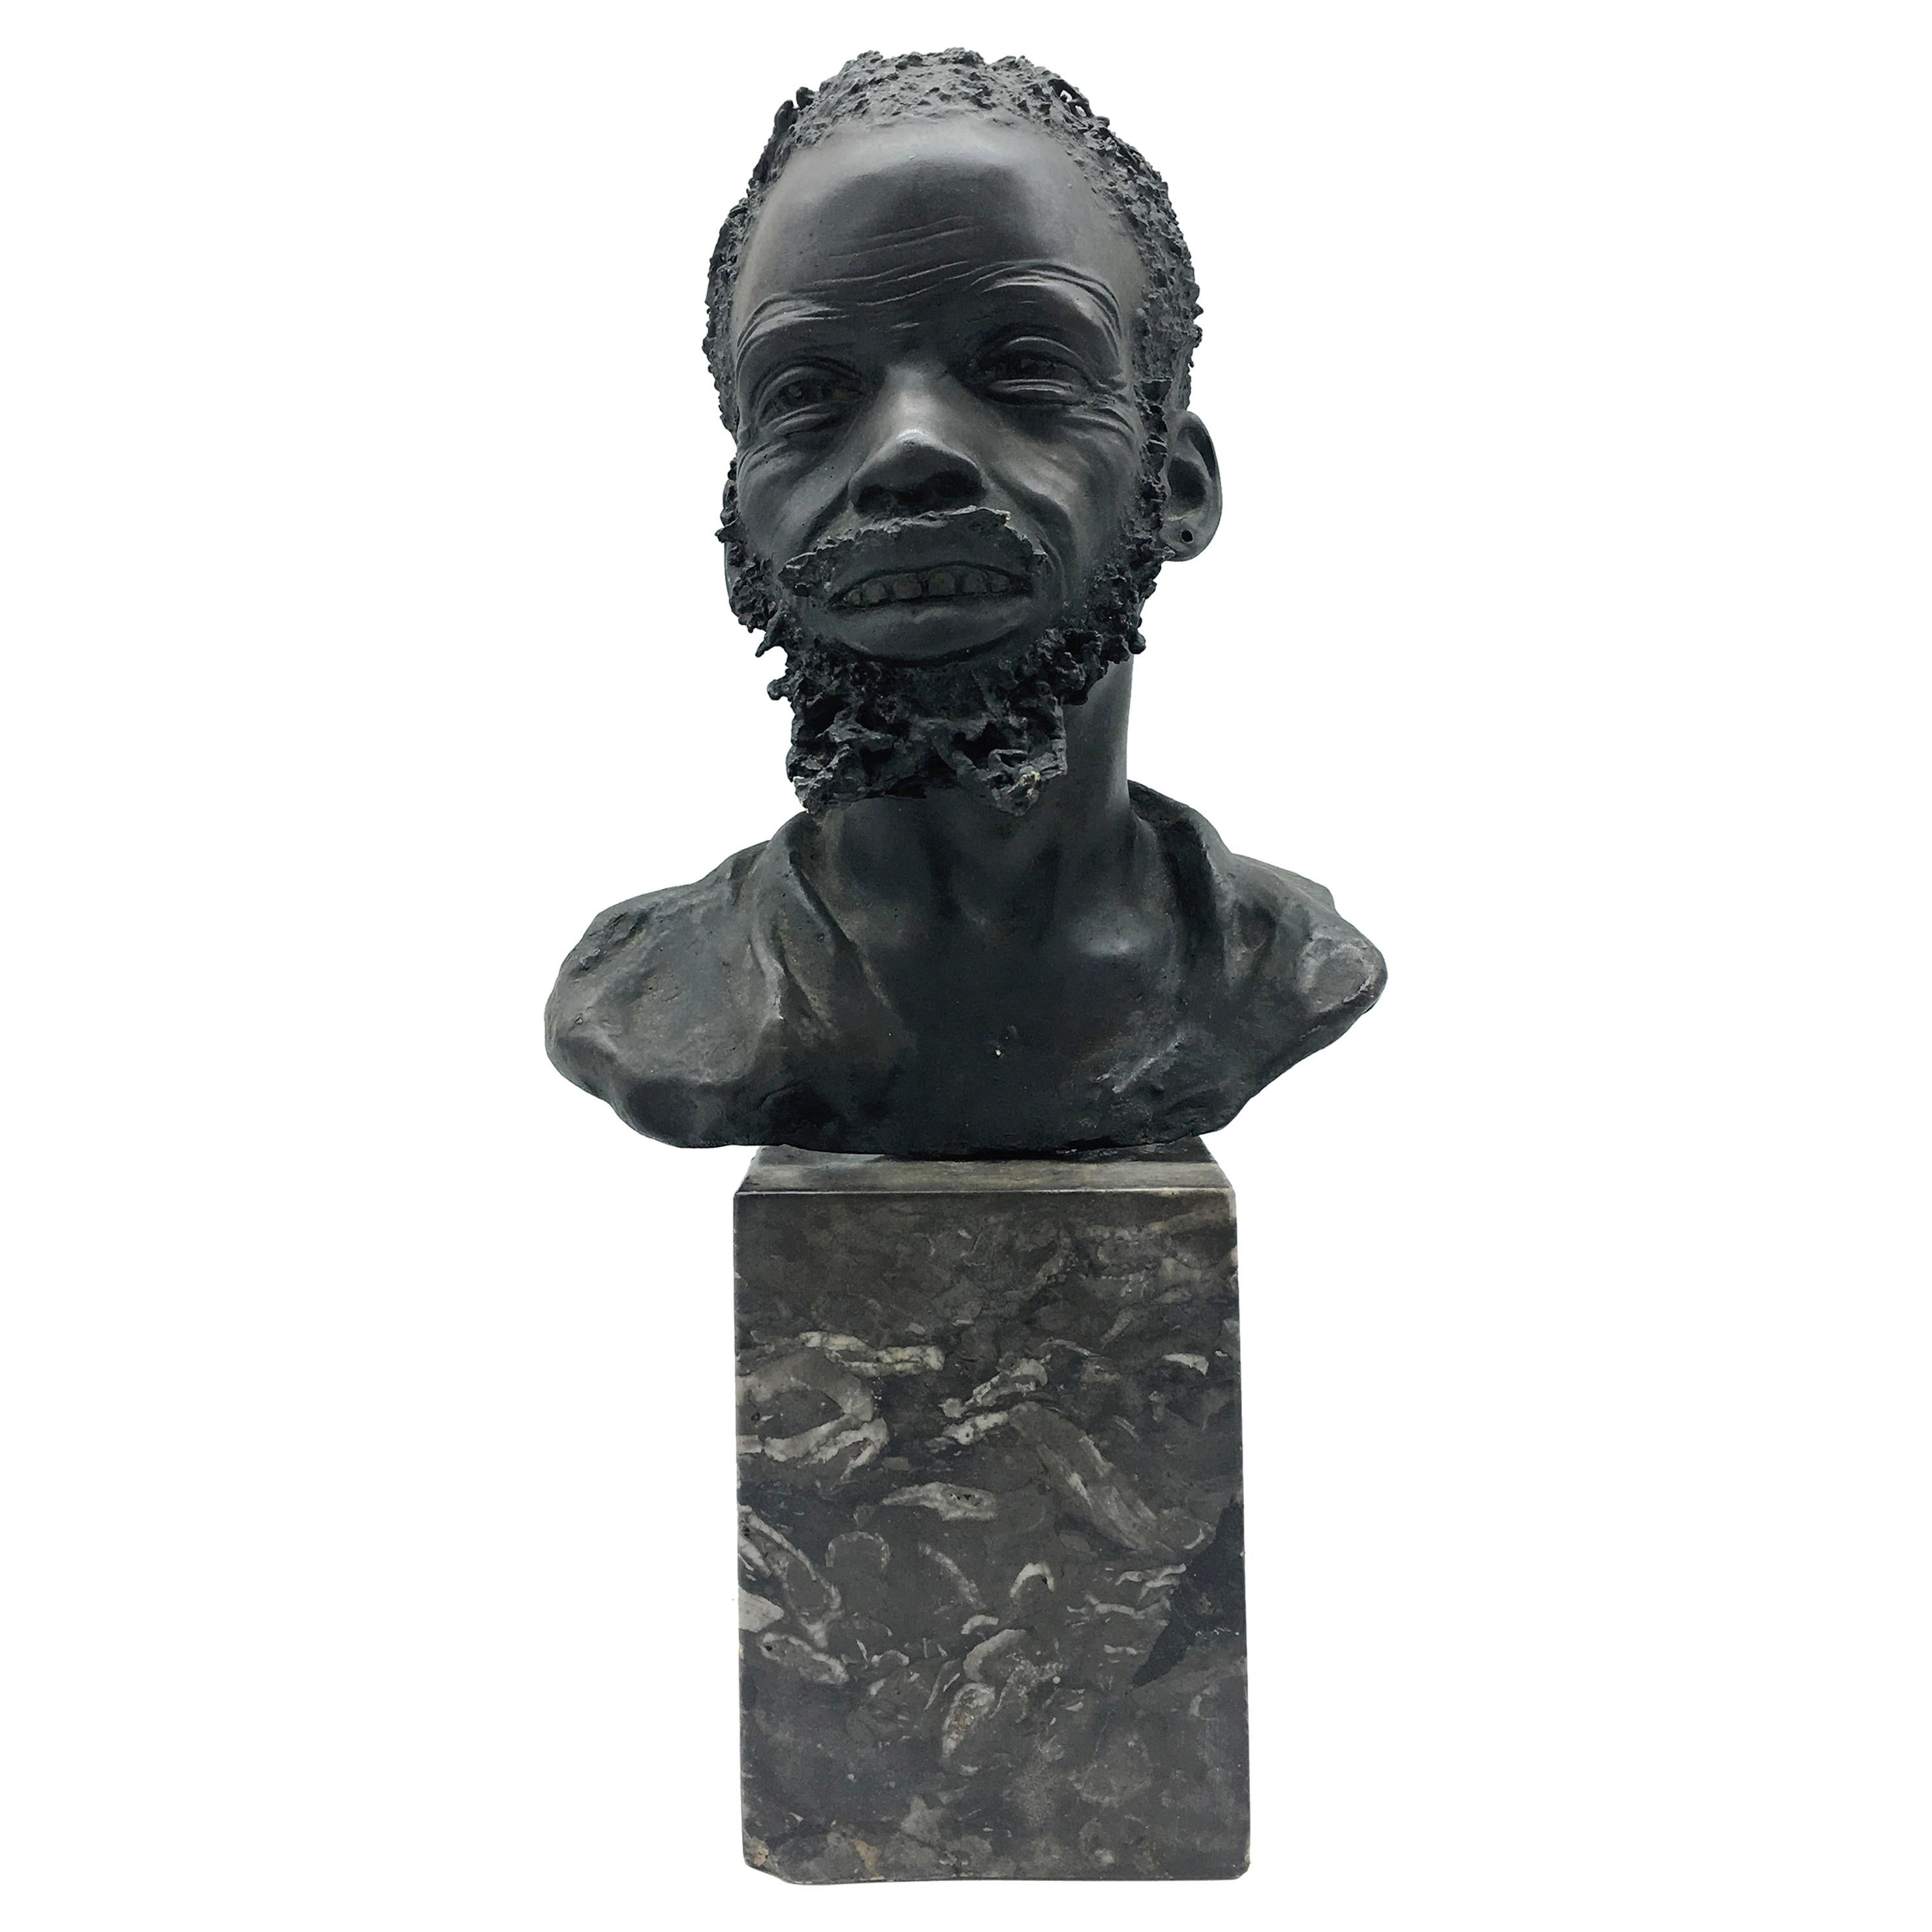 Bronze Sculpture "Head of an African Man" Signed A. Neiviller